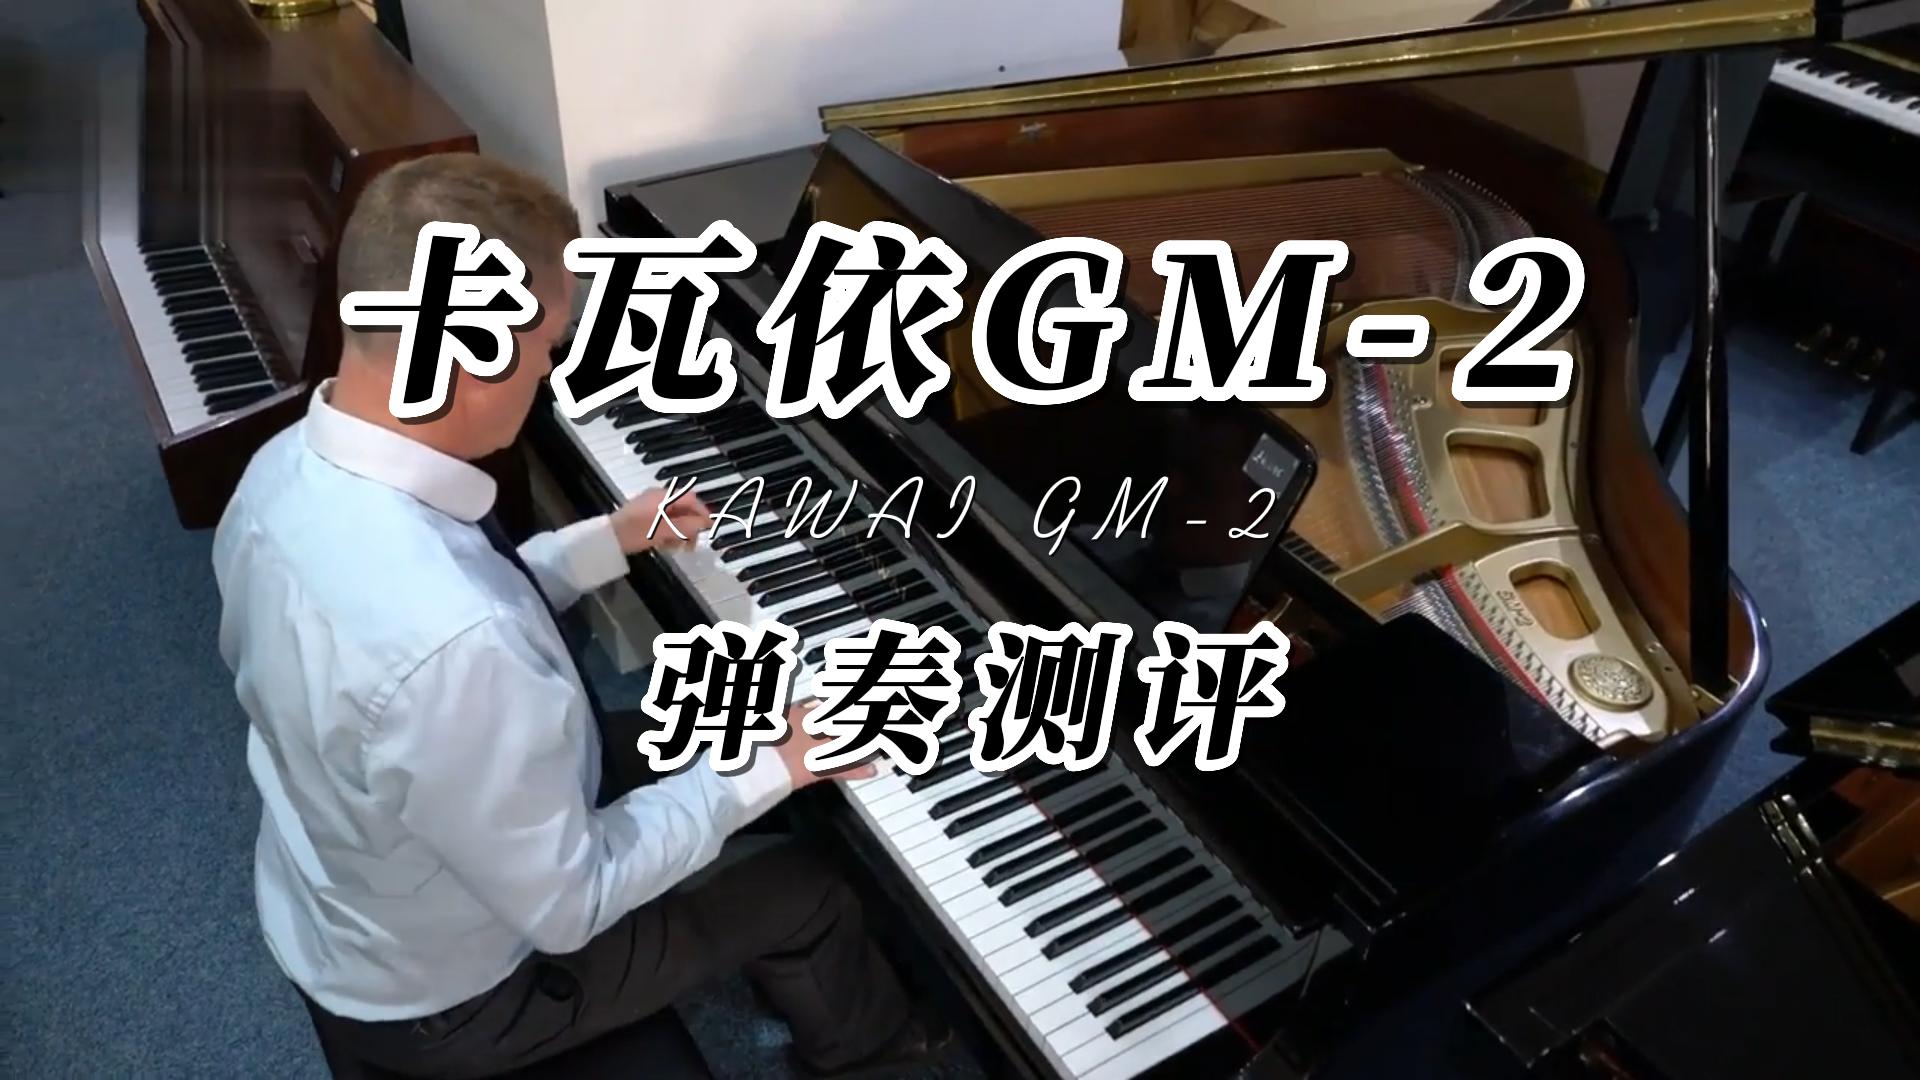 KAWAI 卡瓦依GM-2三角钢琴弹奏测评-柏通琴行整理